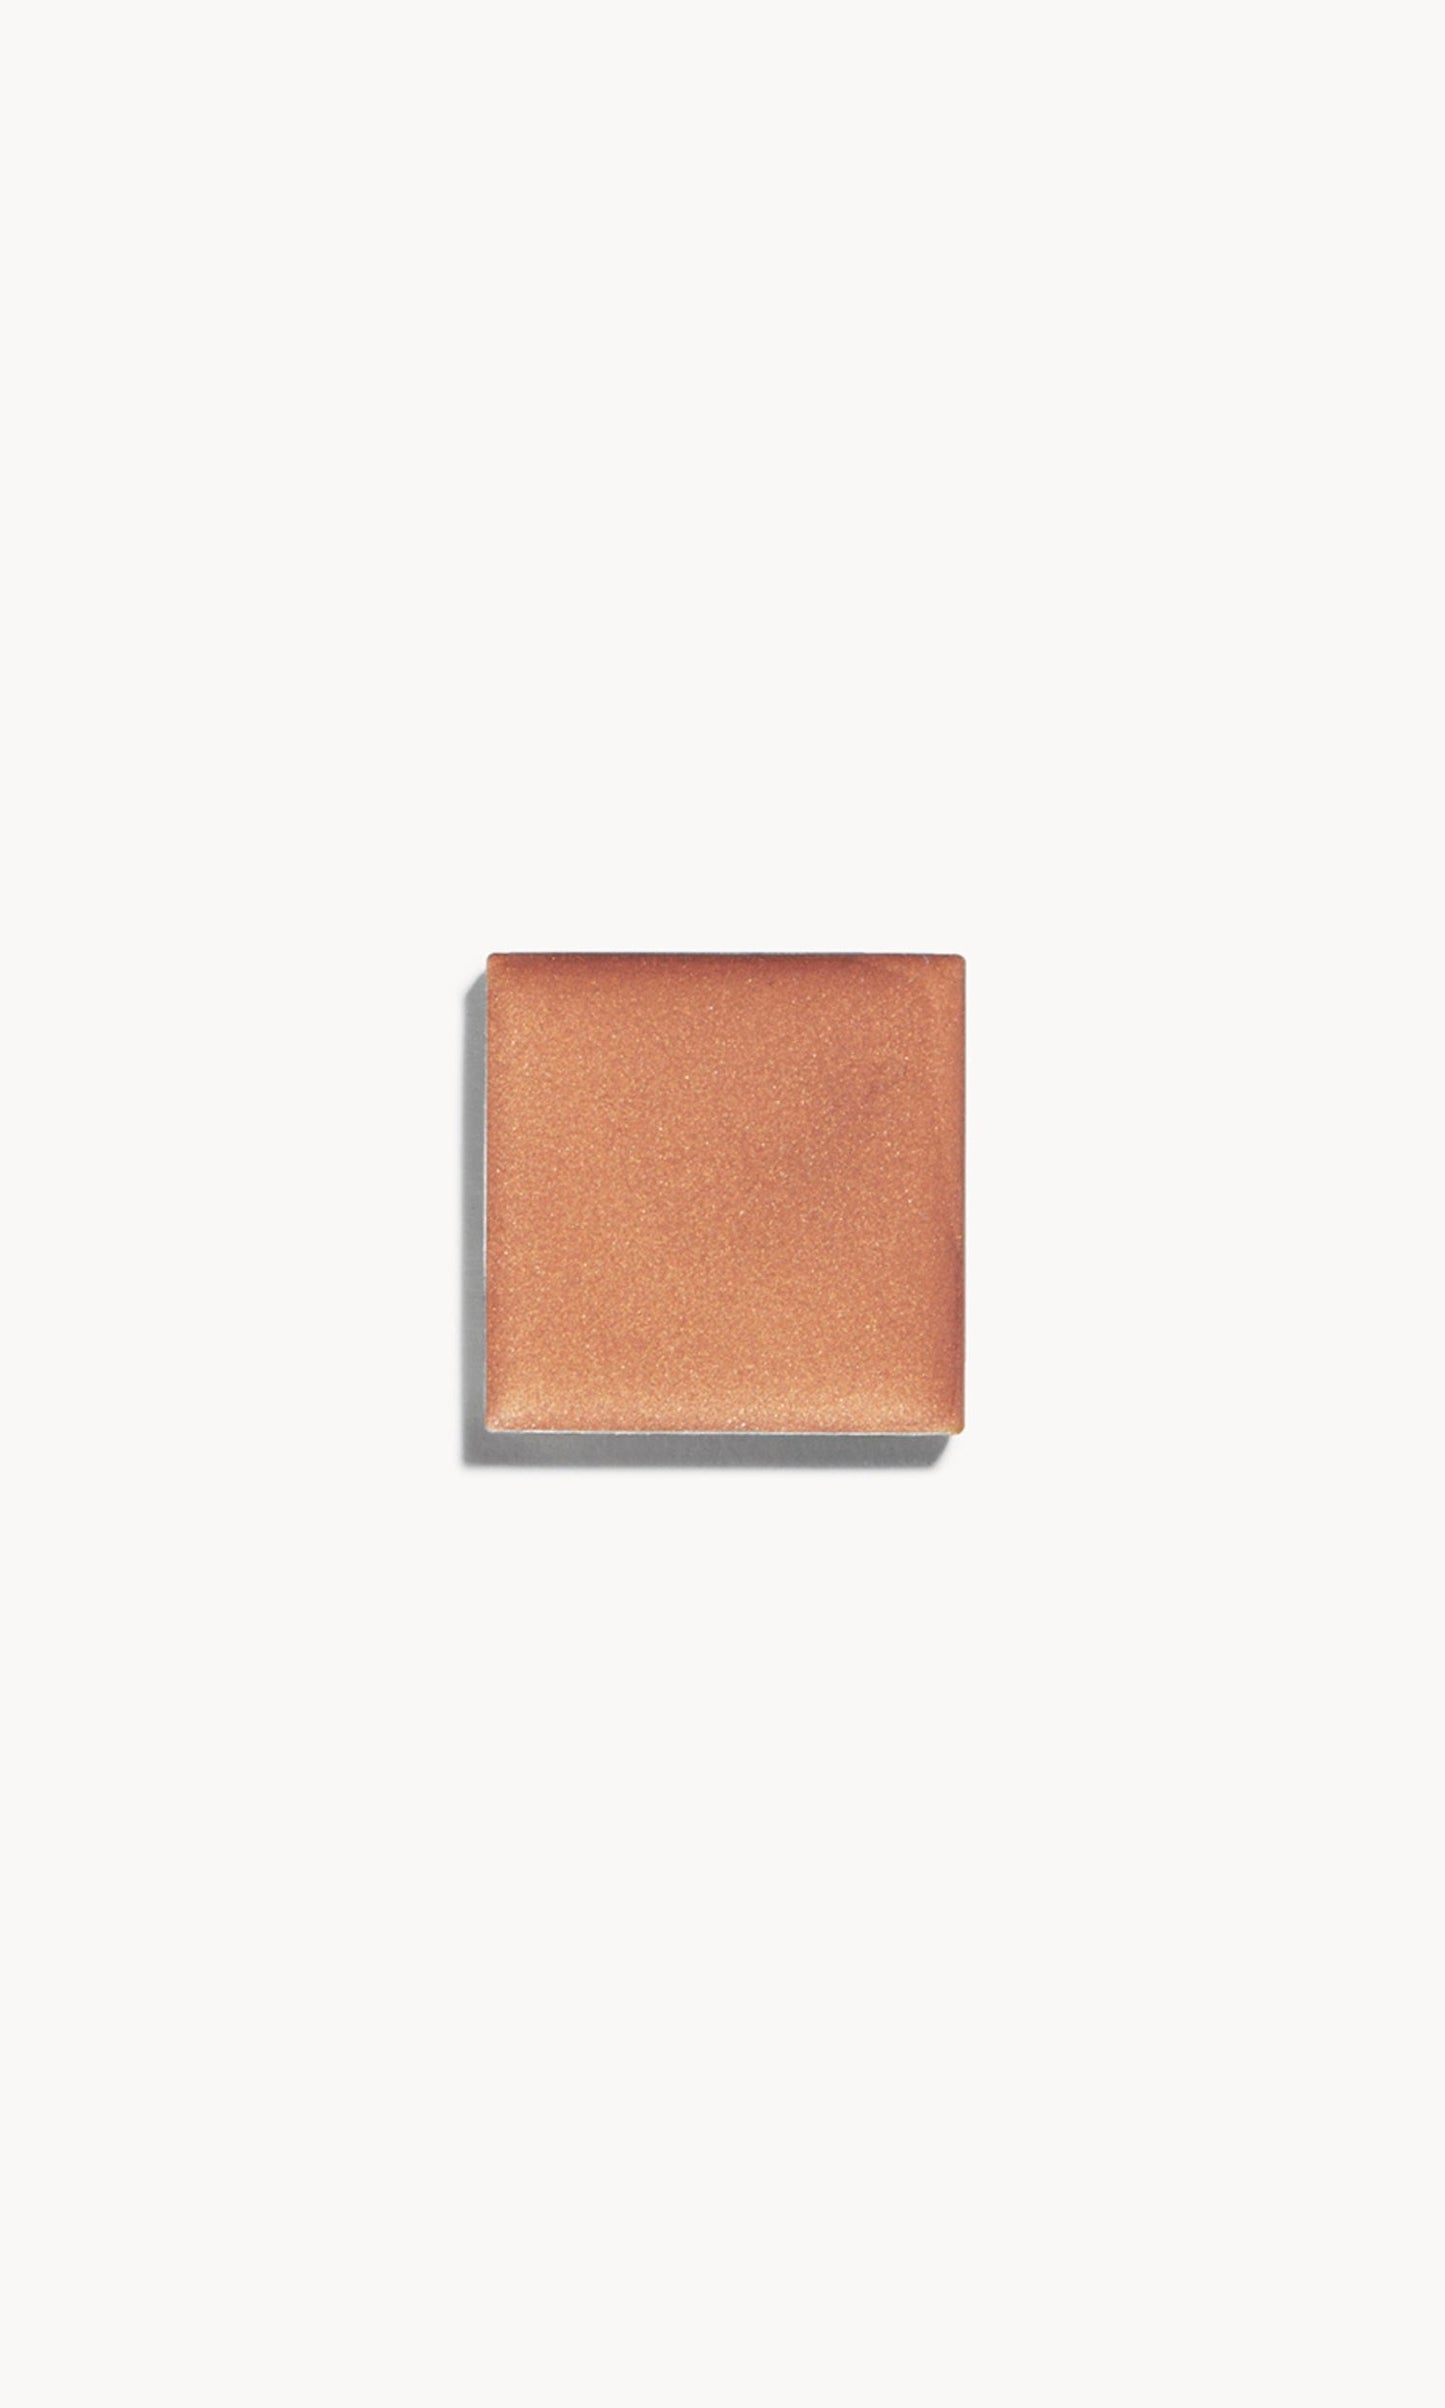 A square of warm copper-tone cream bronzer on a white background